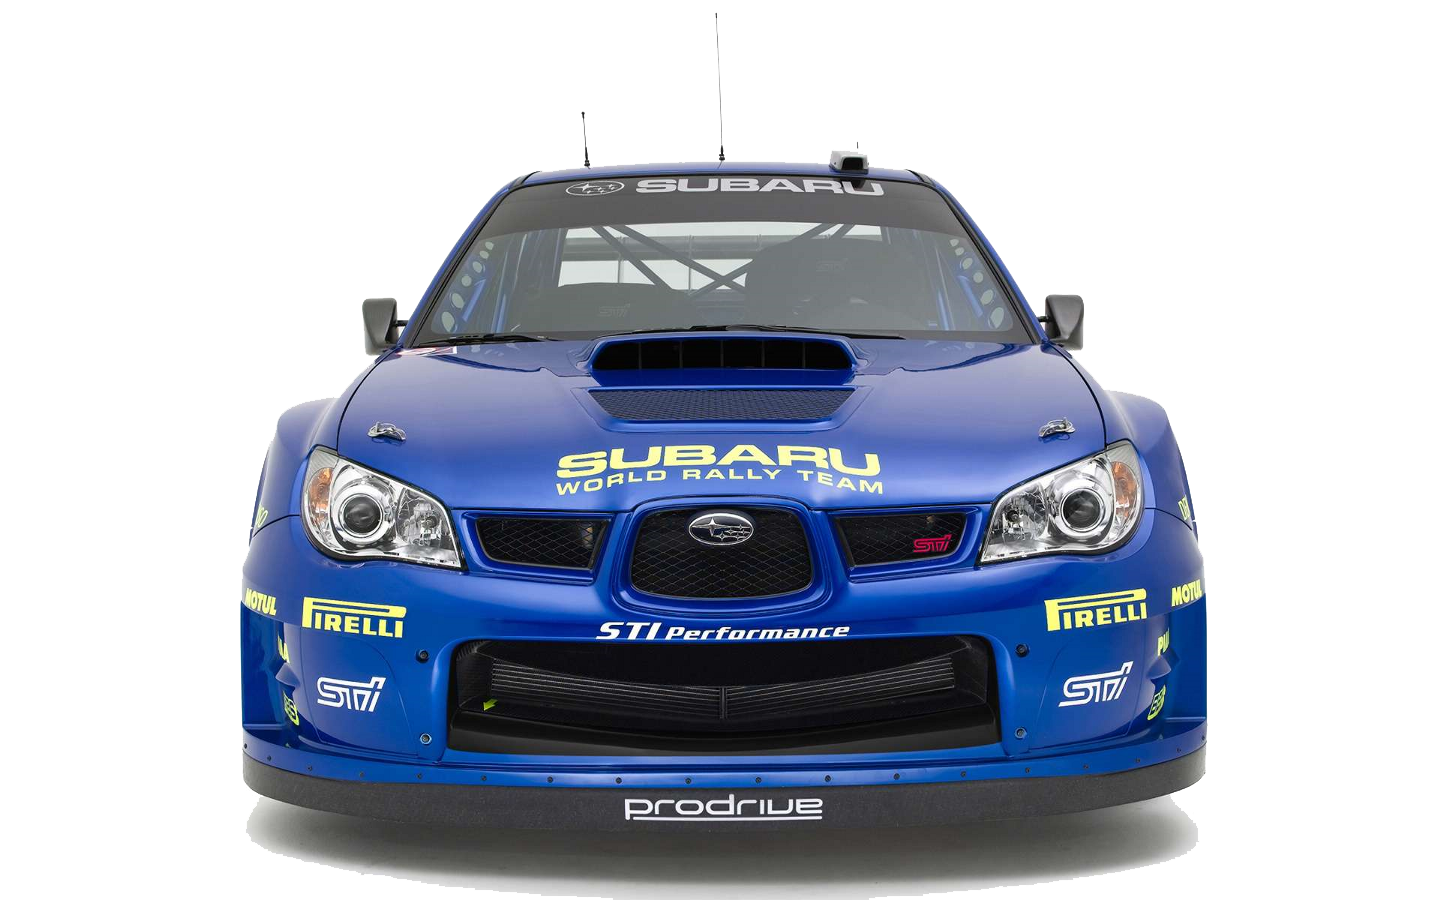 Subaru Logo hd png